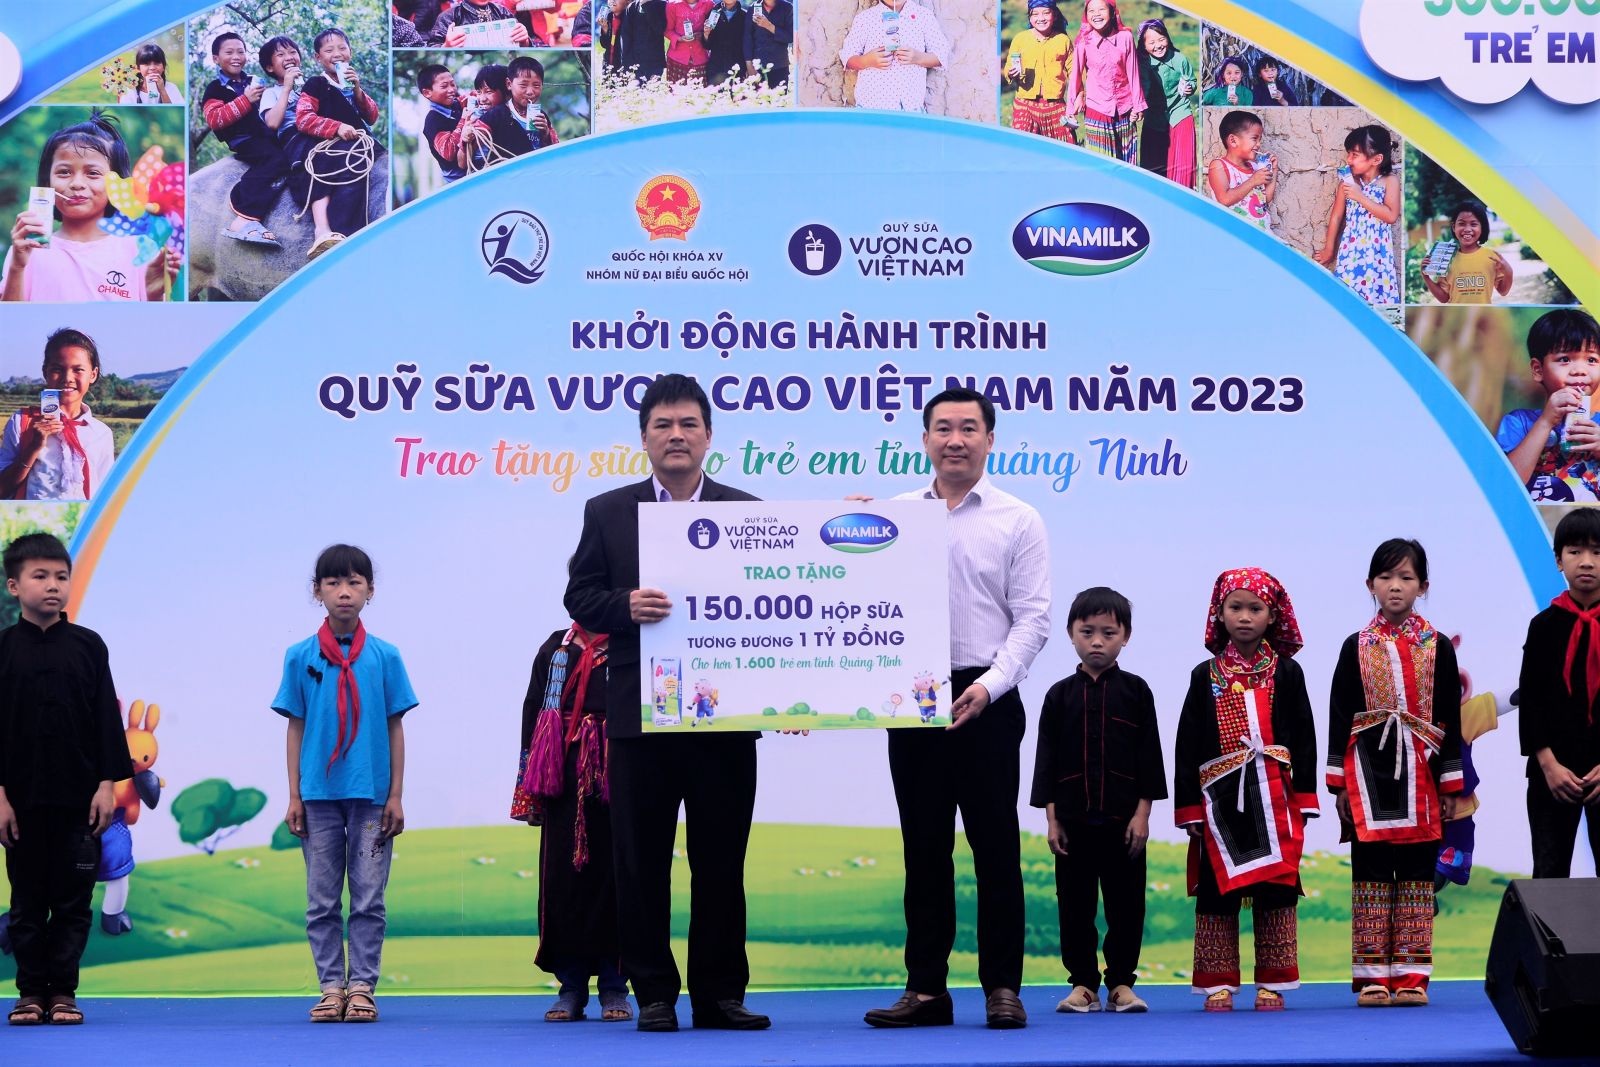 Năm nay, trẻ em có hoàn cảnh đặc biệt tại Quảng Ninh sẽ được nhận 150.000 hộp sữa trị giá 1 tỷ đồng từ Quỹ sữa Vươn cao Việt Nam.